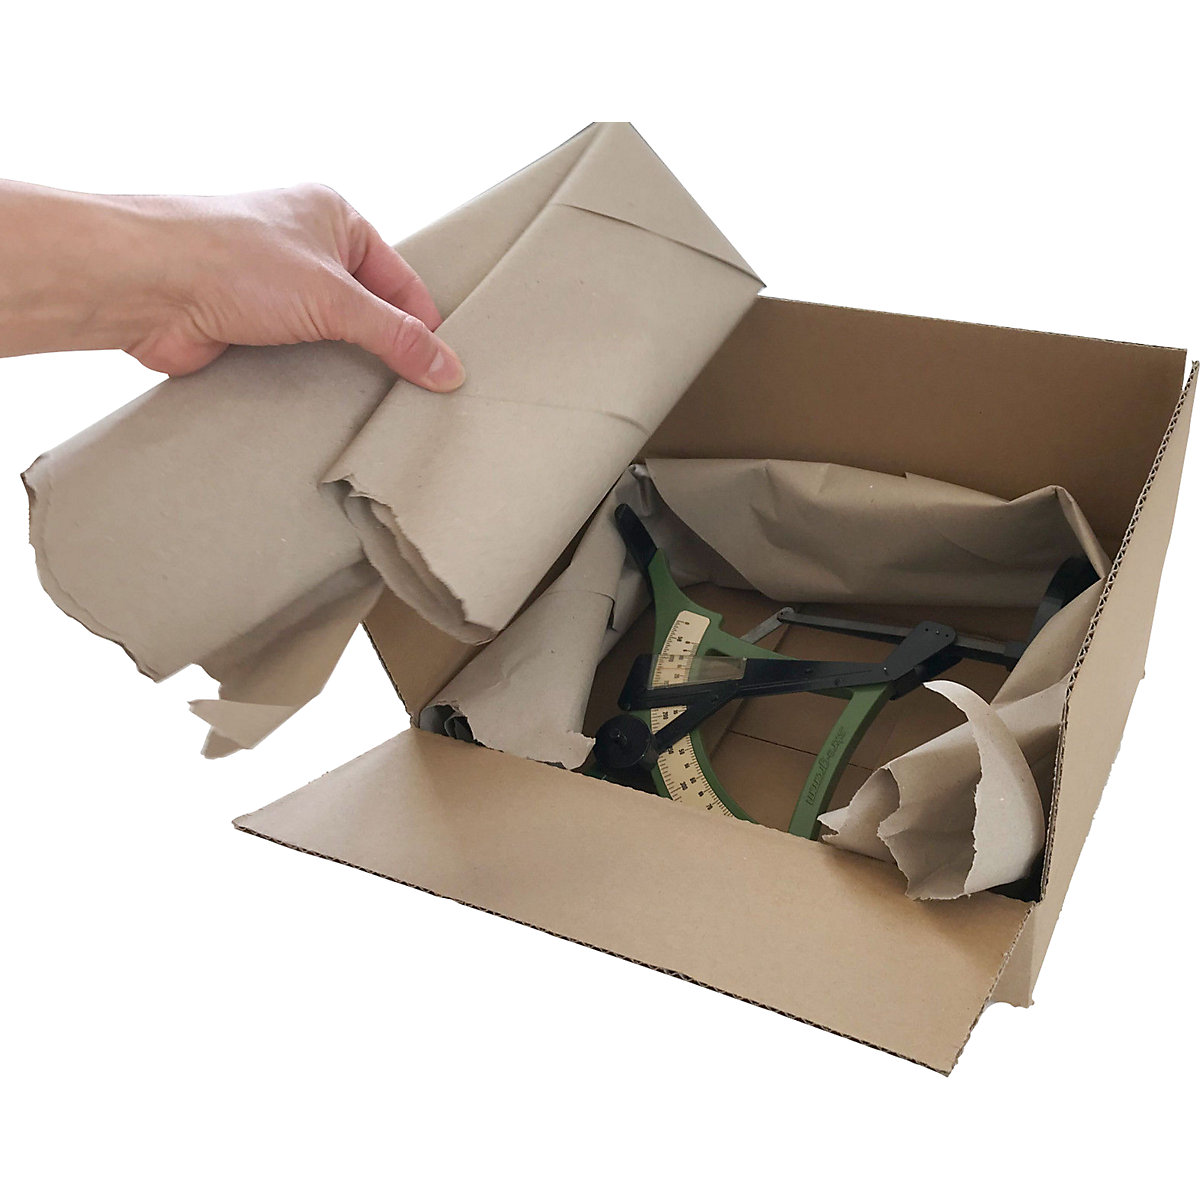 Umplutură de hârtie în cutie de carton cu distribuitor (Imagine produs 5)-4